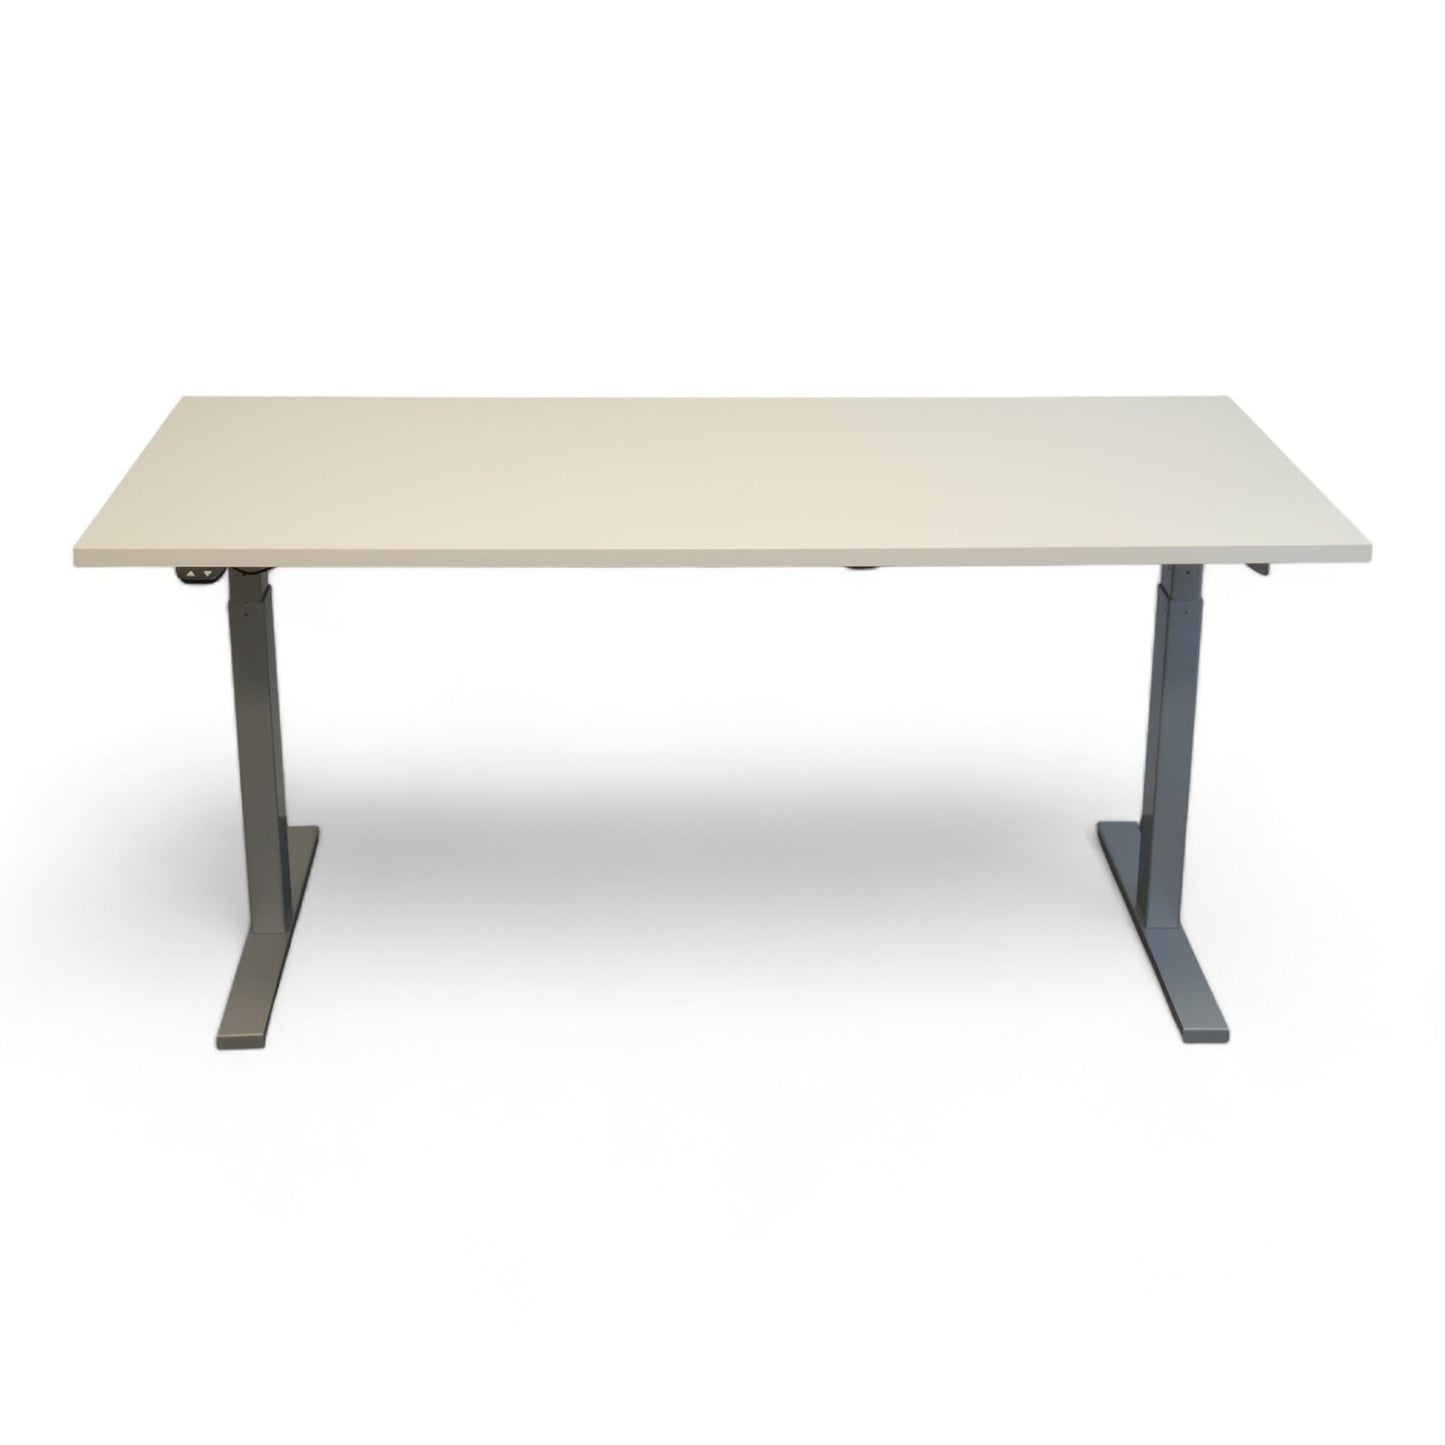 Nyrenset | Linak høydejusterbart skrivebord i hvitt og grått, 160x80cm